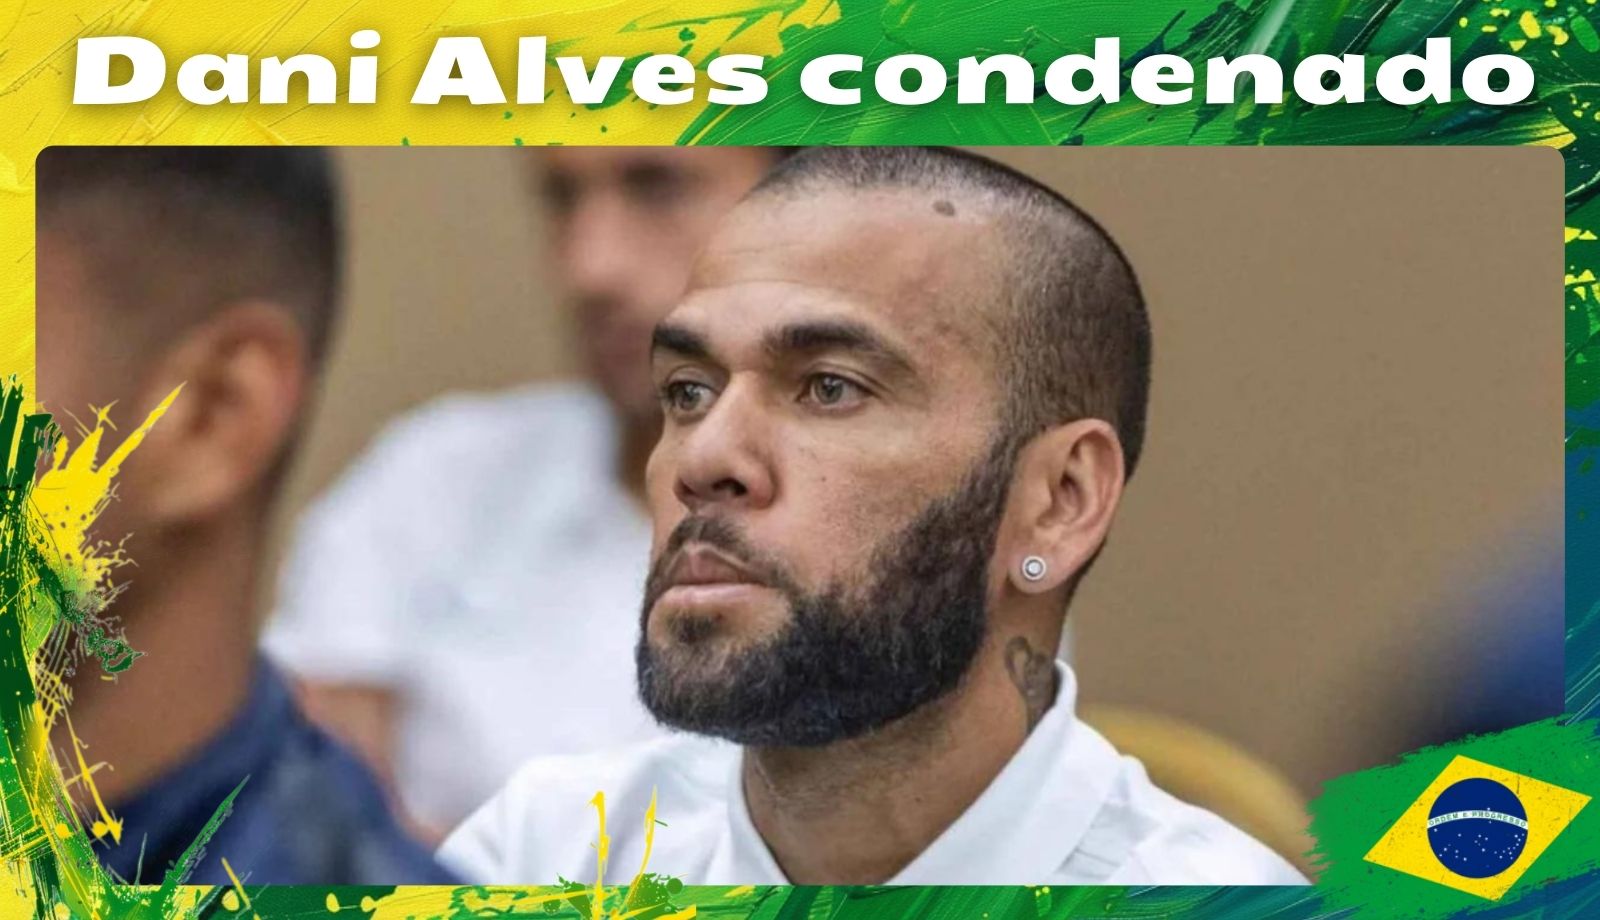 Dani Alves condenado notícias esportivas no Brasil